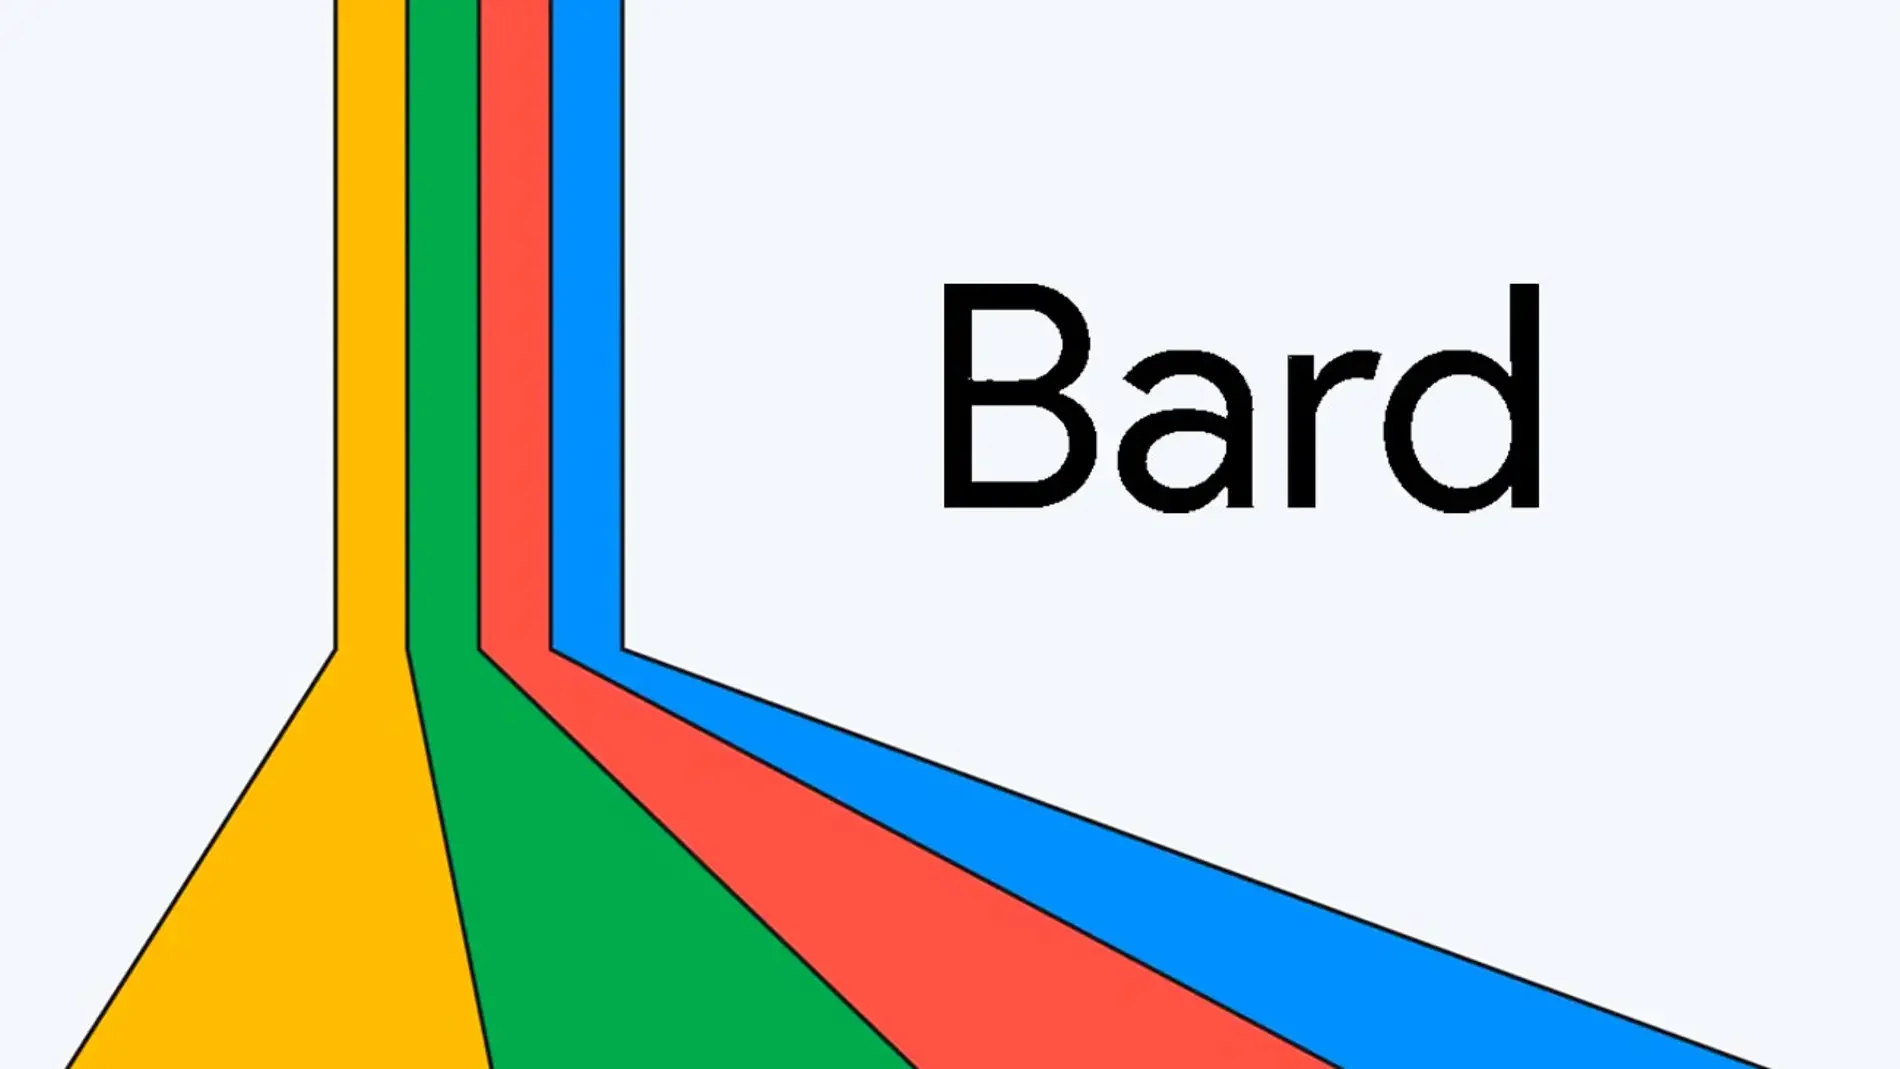 Lista de prompts o instrucciones en español para Bard, la inteligencia artificial de Google